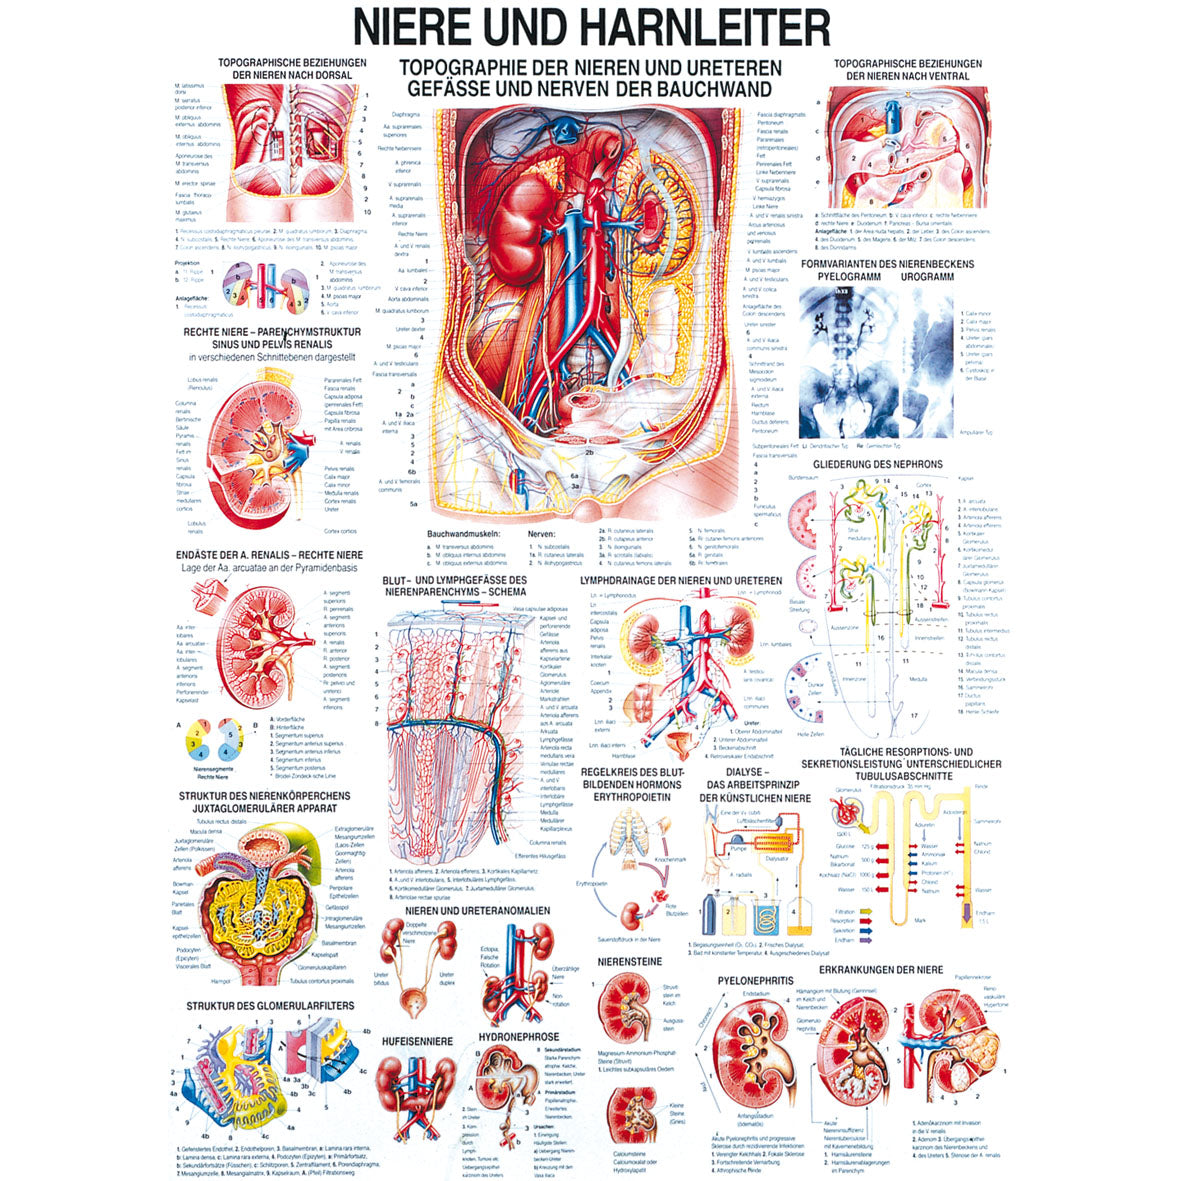 Anatomisches Poster "Niere und Harnleiter"